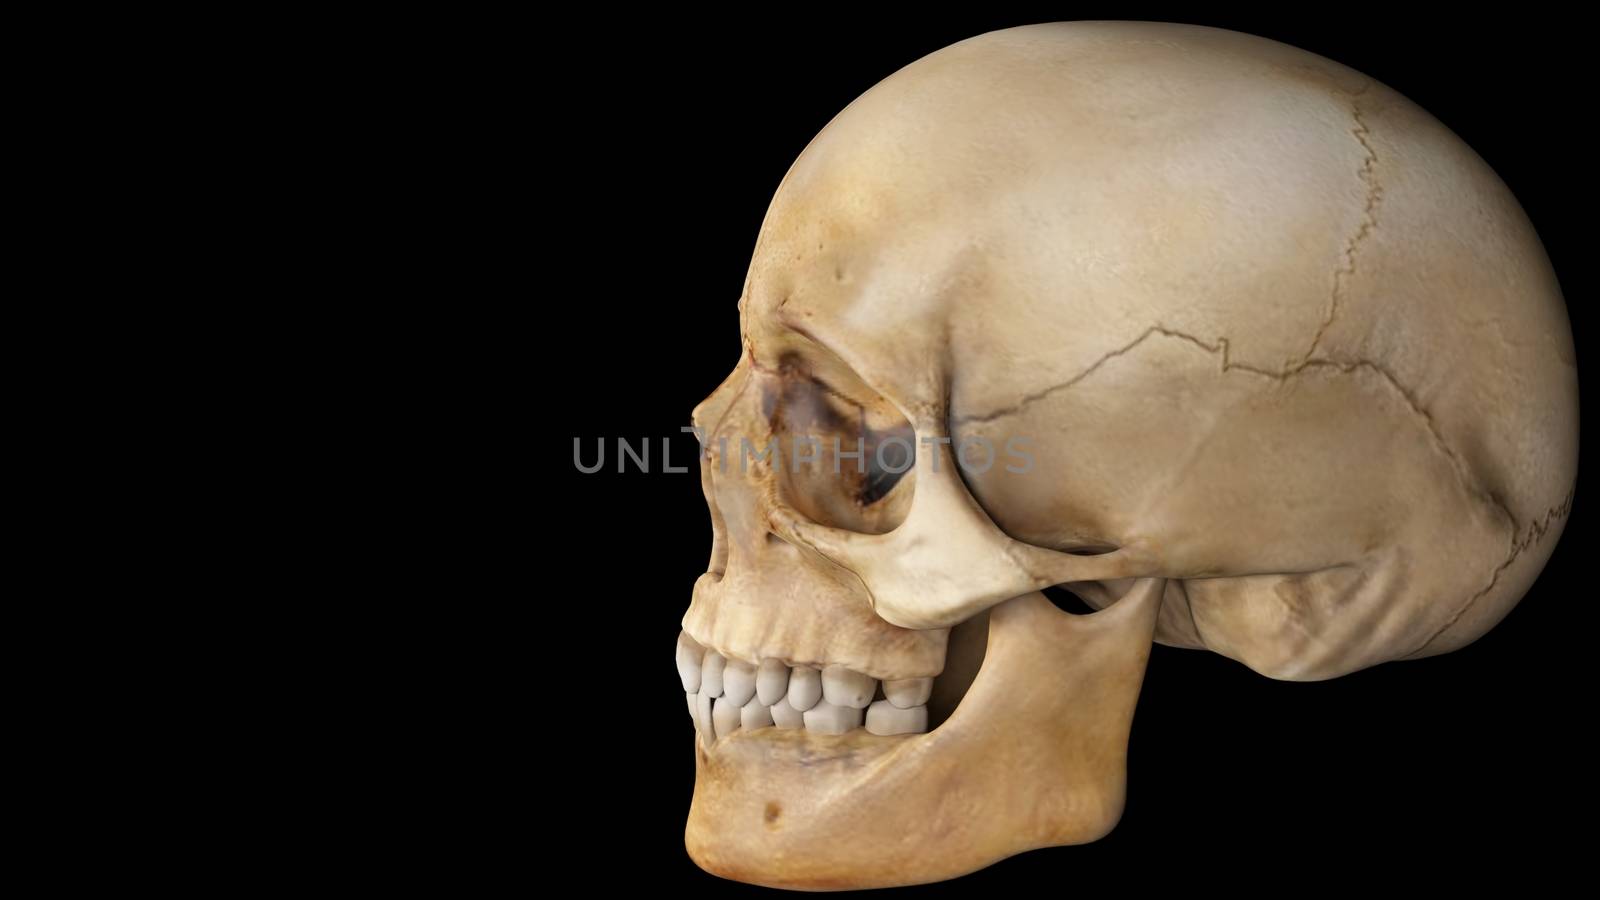 artifical human skull on black background, skull